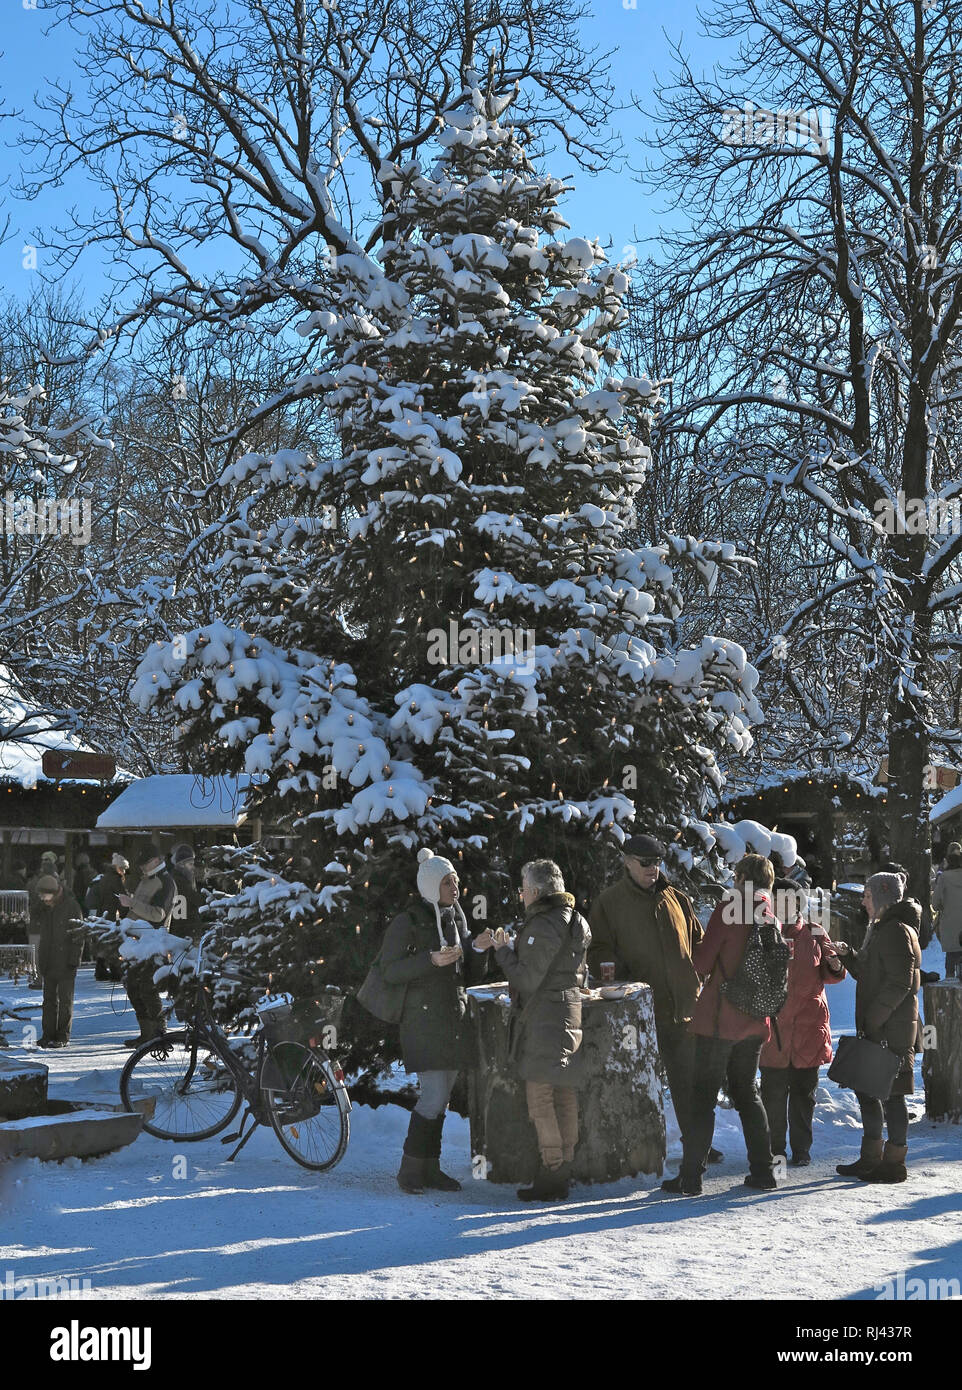 Deutschland, Oberbayern, M?nchen, Englischer Garten Weihnachtsmarkt am Chinesischen Turm, Foto Stock